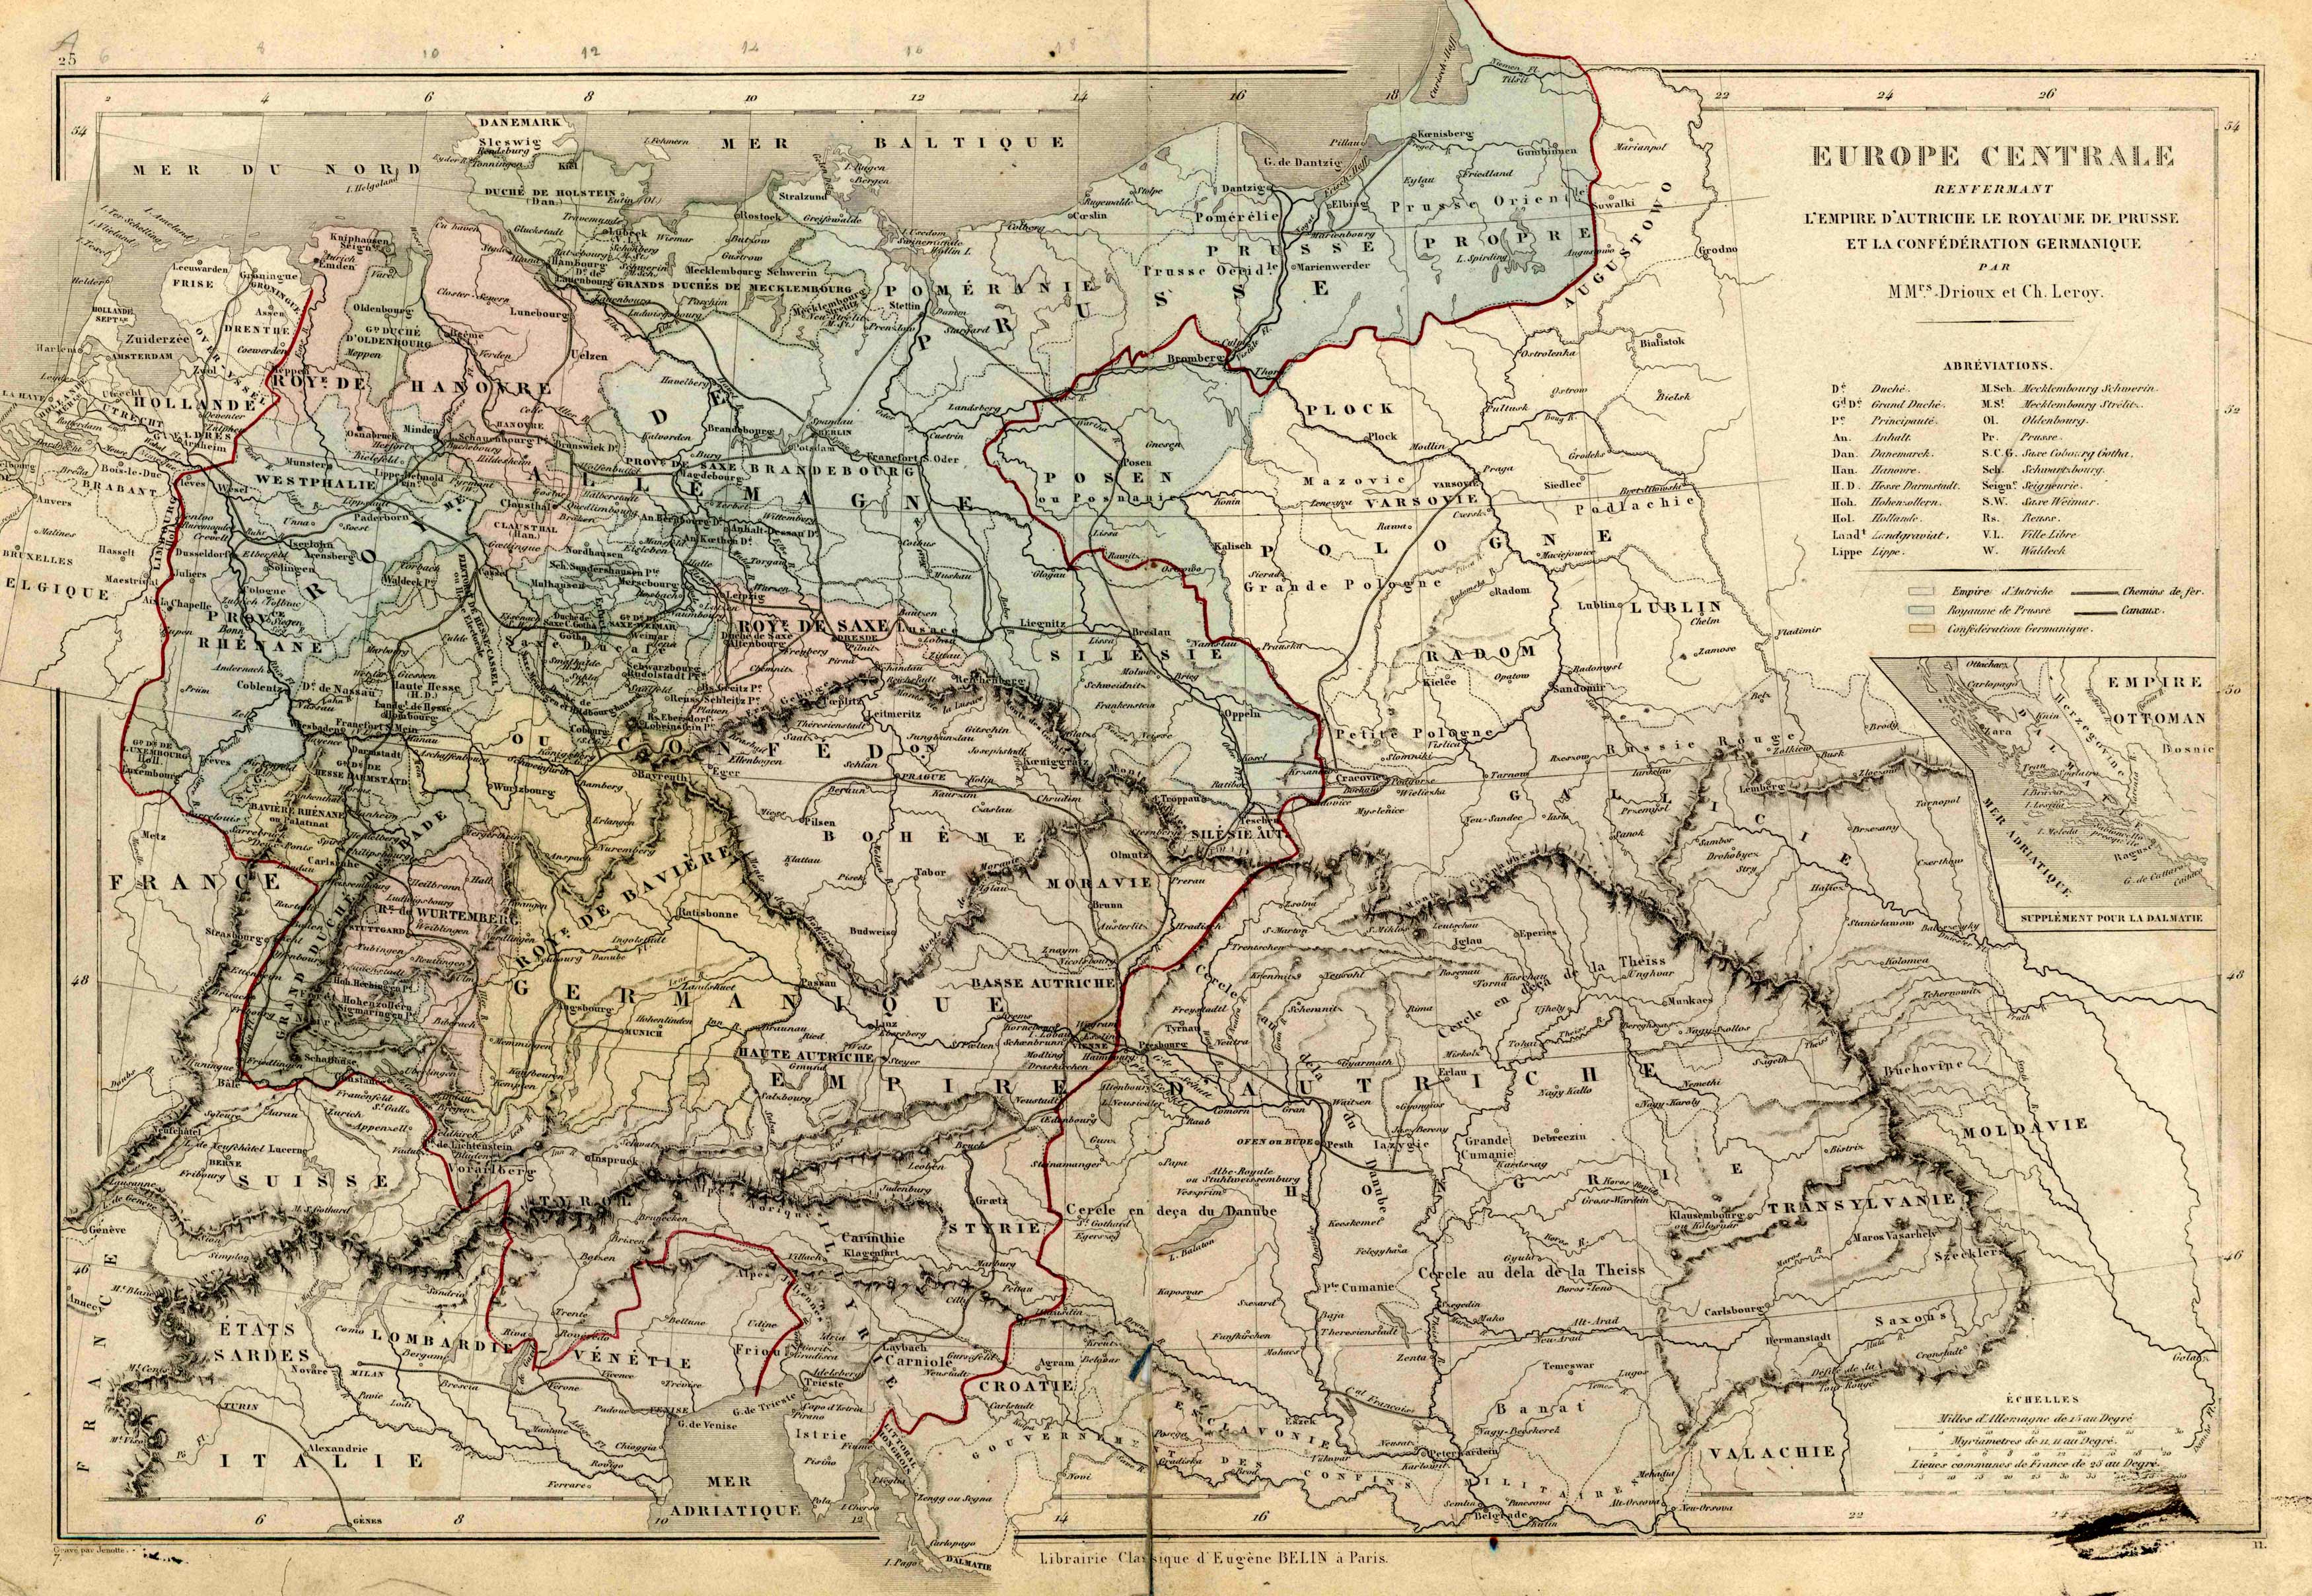 Europe Central renfermant lEmpire d'Autriche, le Royaume de Prusse et ...